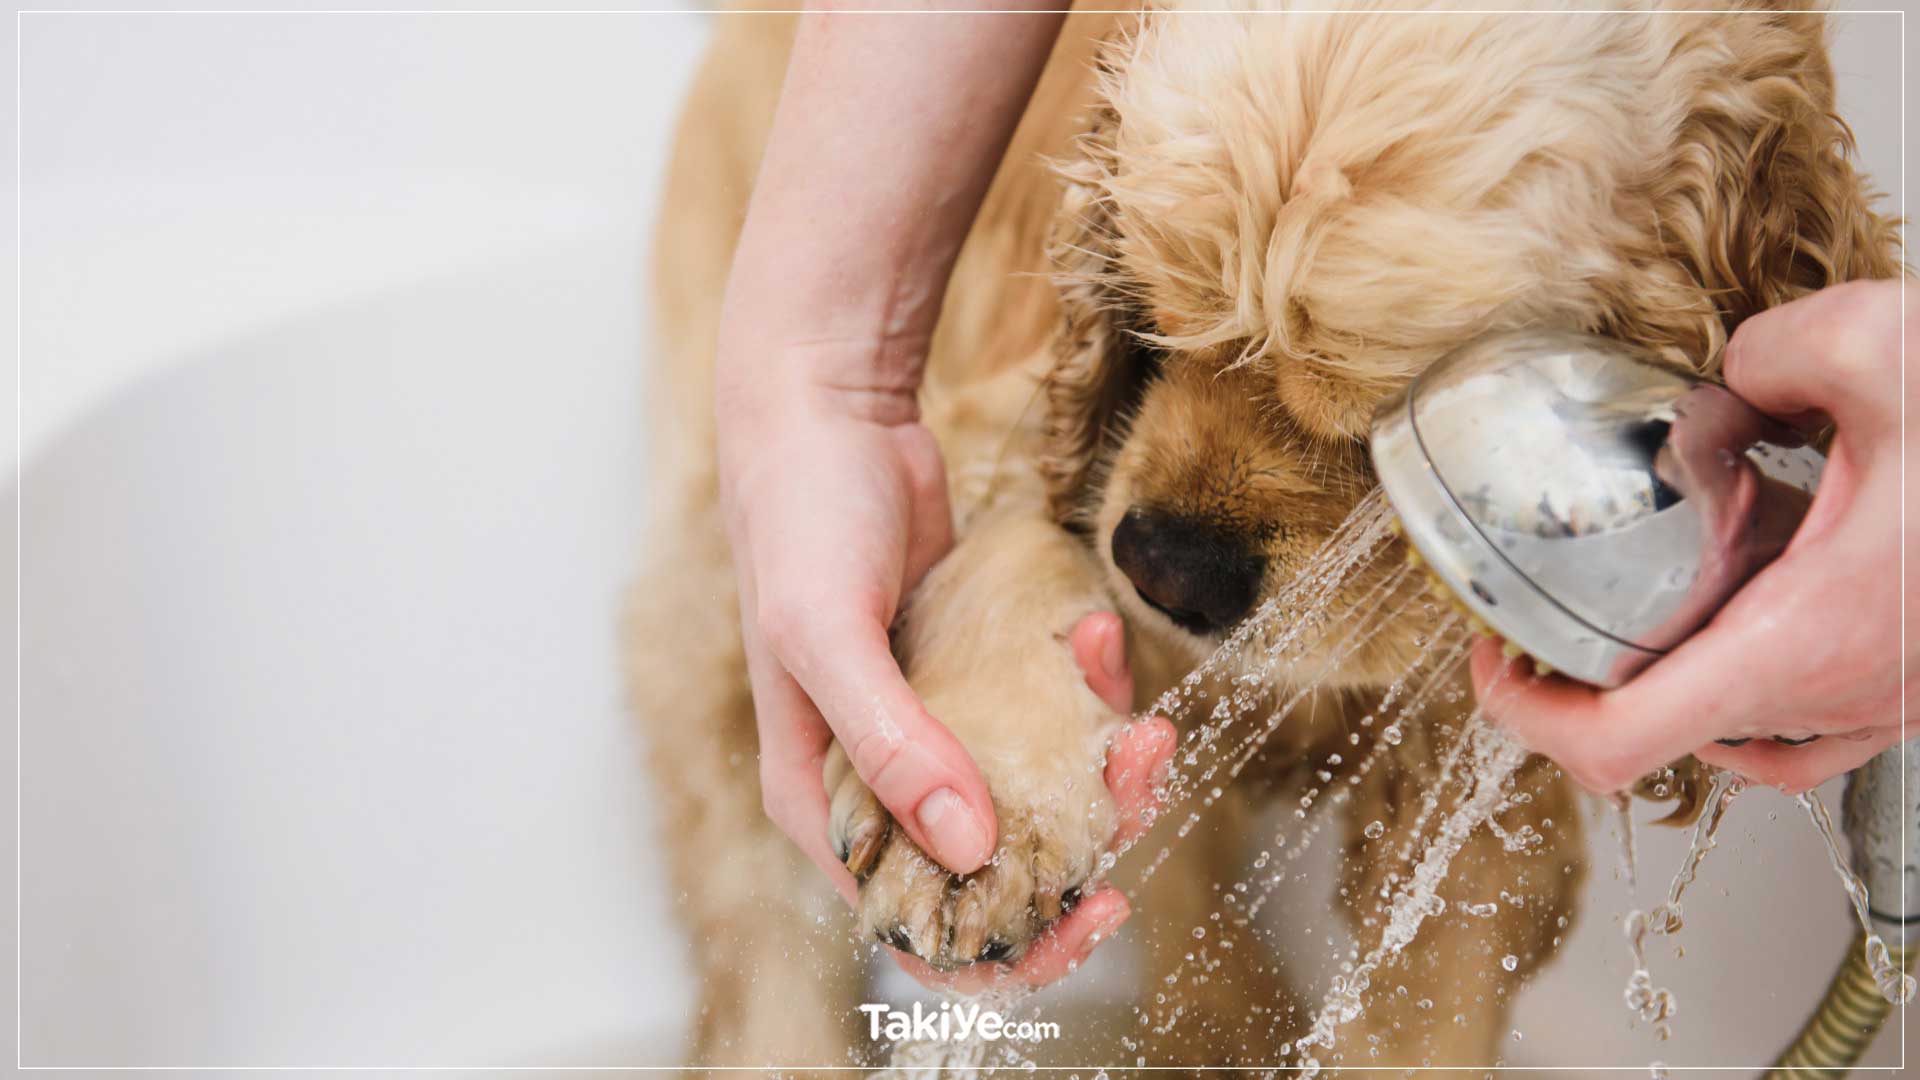 köpek patileri nasıl temizlenir